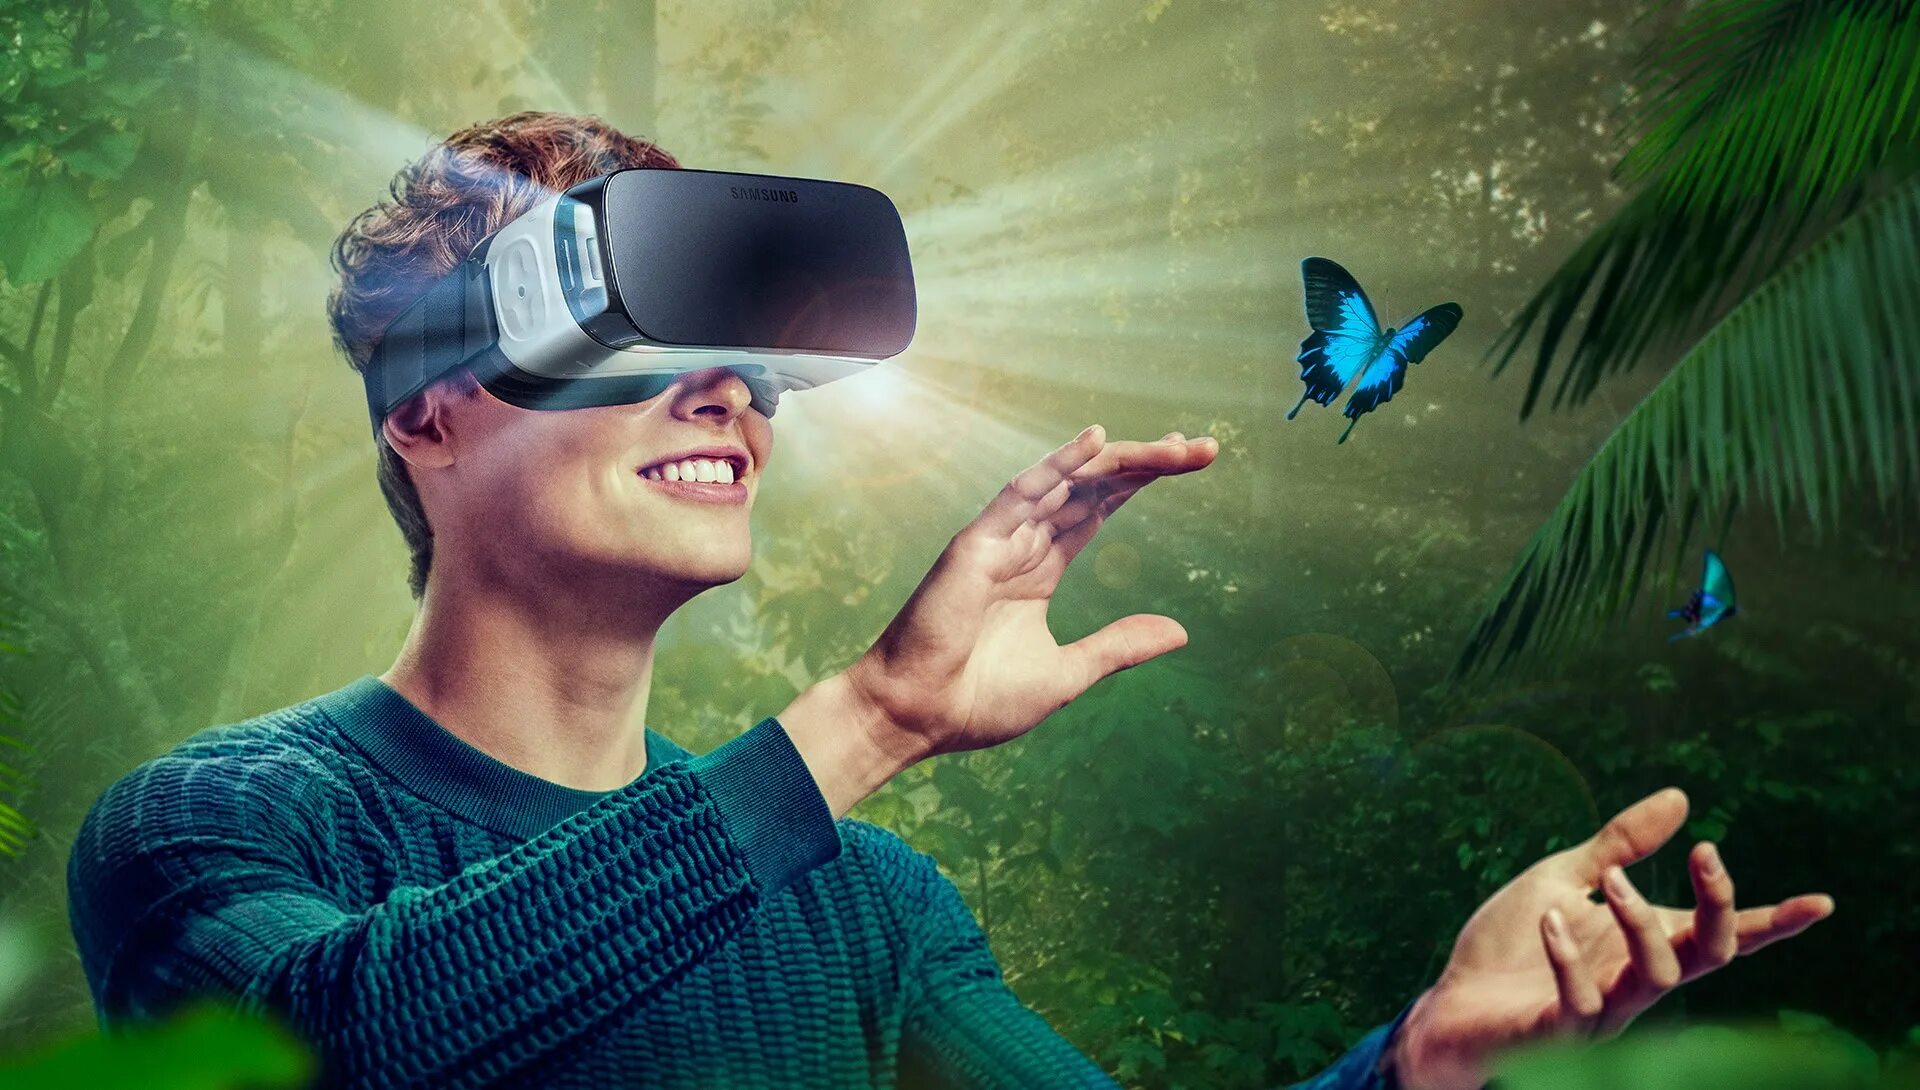 Виртуальная реальность (Virtual reality, VR). Визуальная реальность. Иртуальная реальность. Очки виртуальной реальности на человеке.